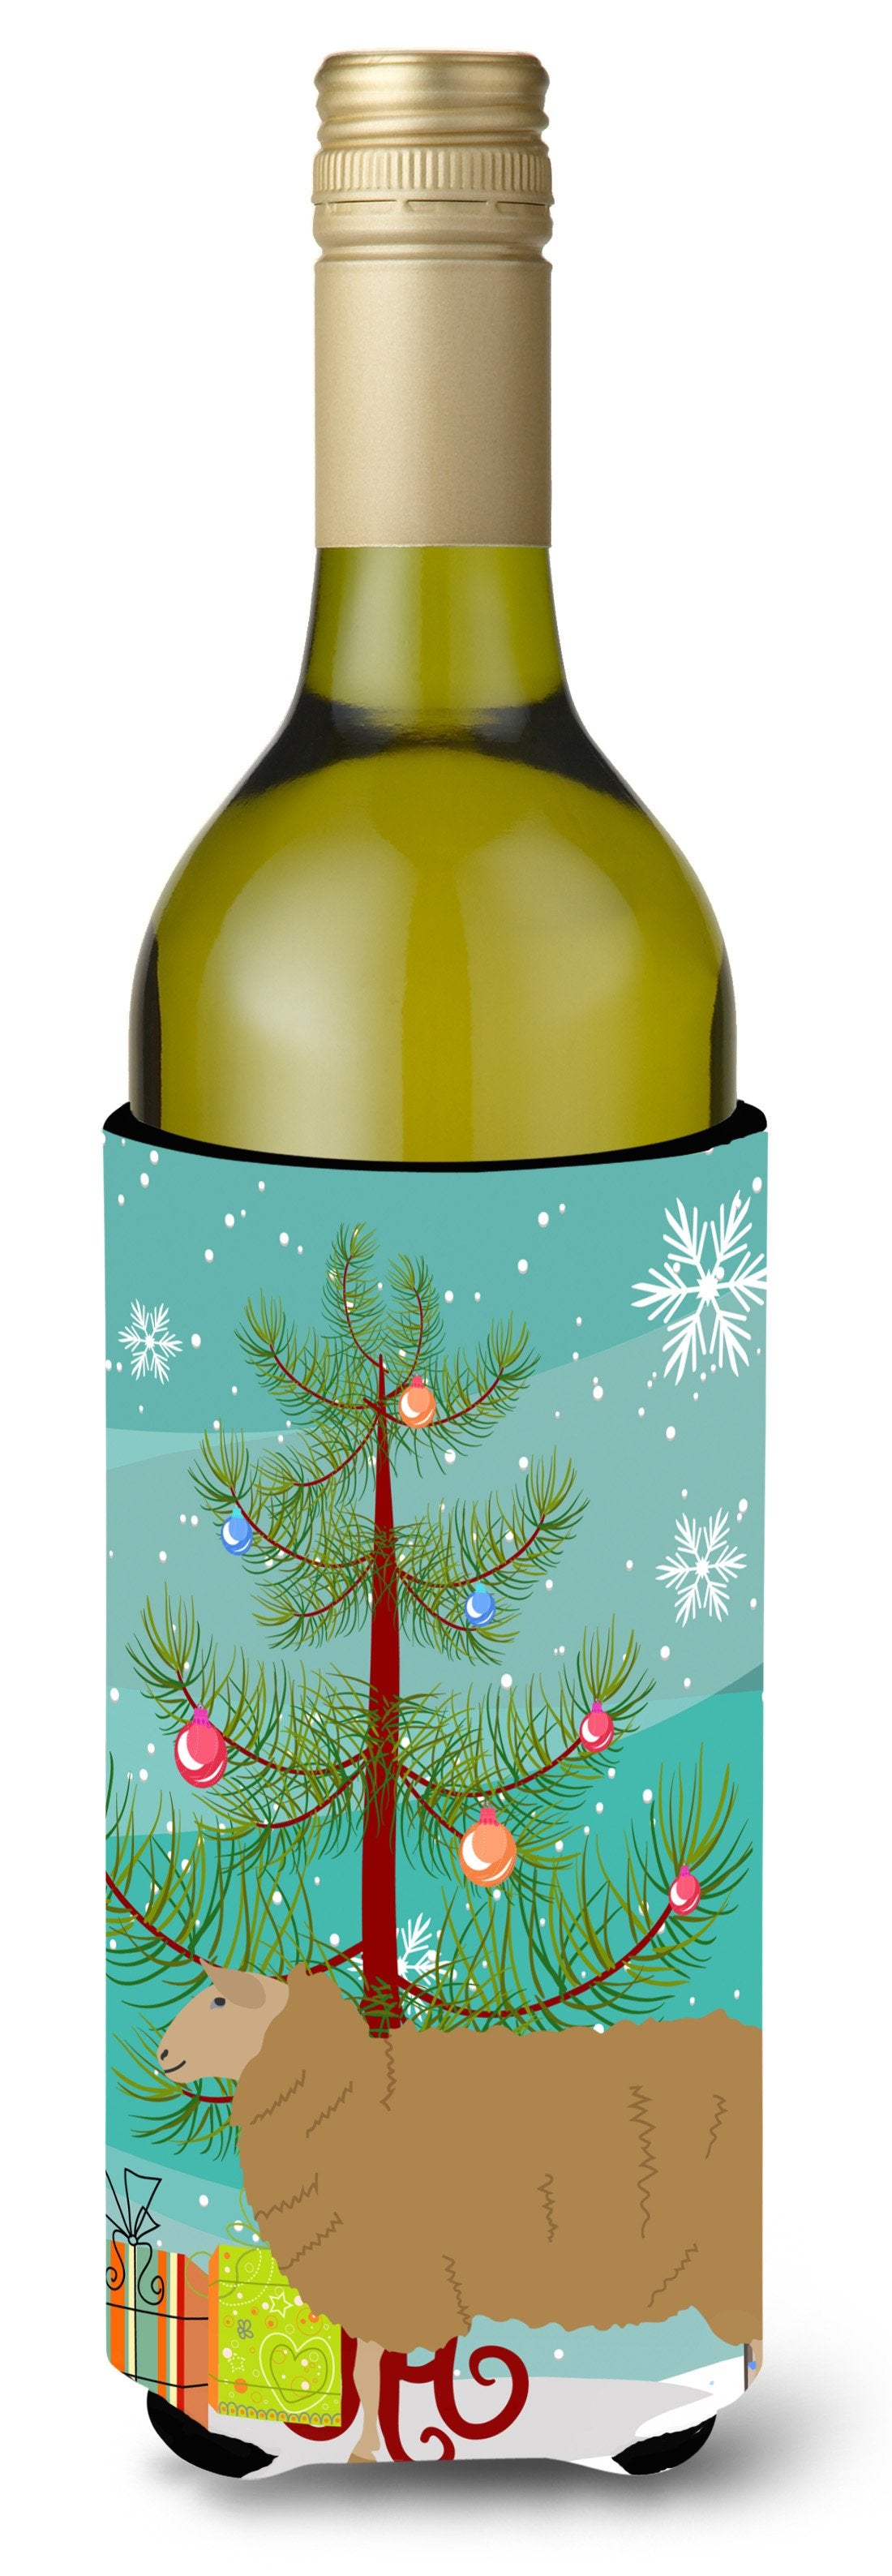 East Friesian Sheep Christmas Wine Bottle Beverge Insulator Hugger BB9344LITERK by Caroline's Treasures